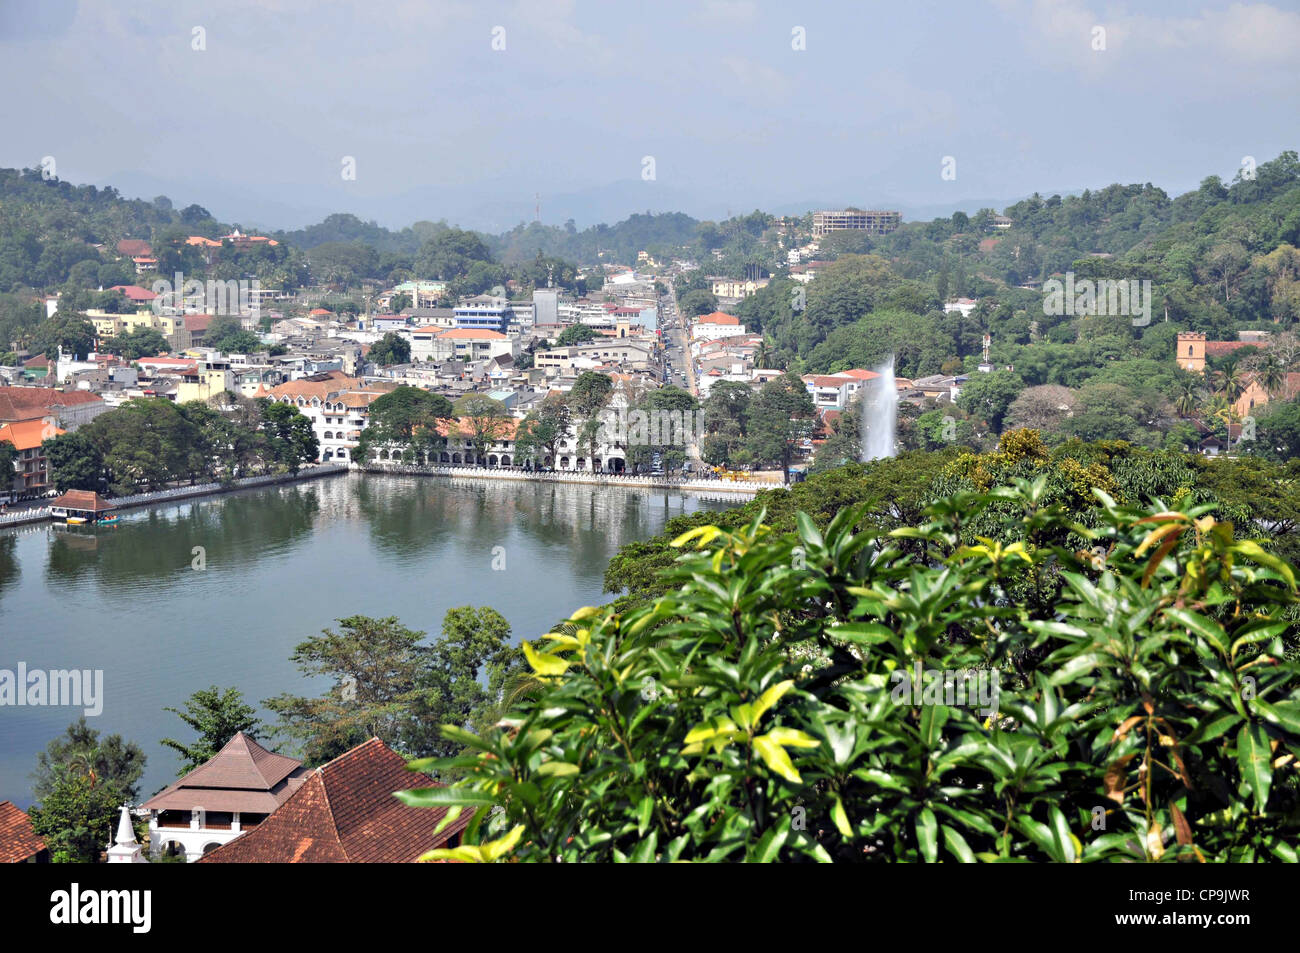 Sri Lanka, Kandy lake and the City centre Stock Photo